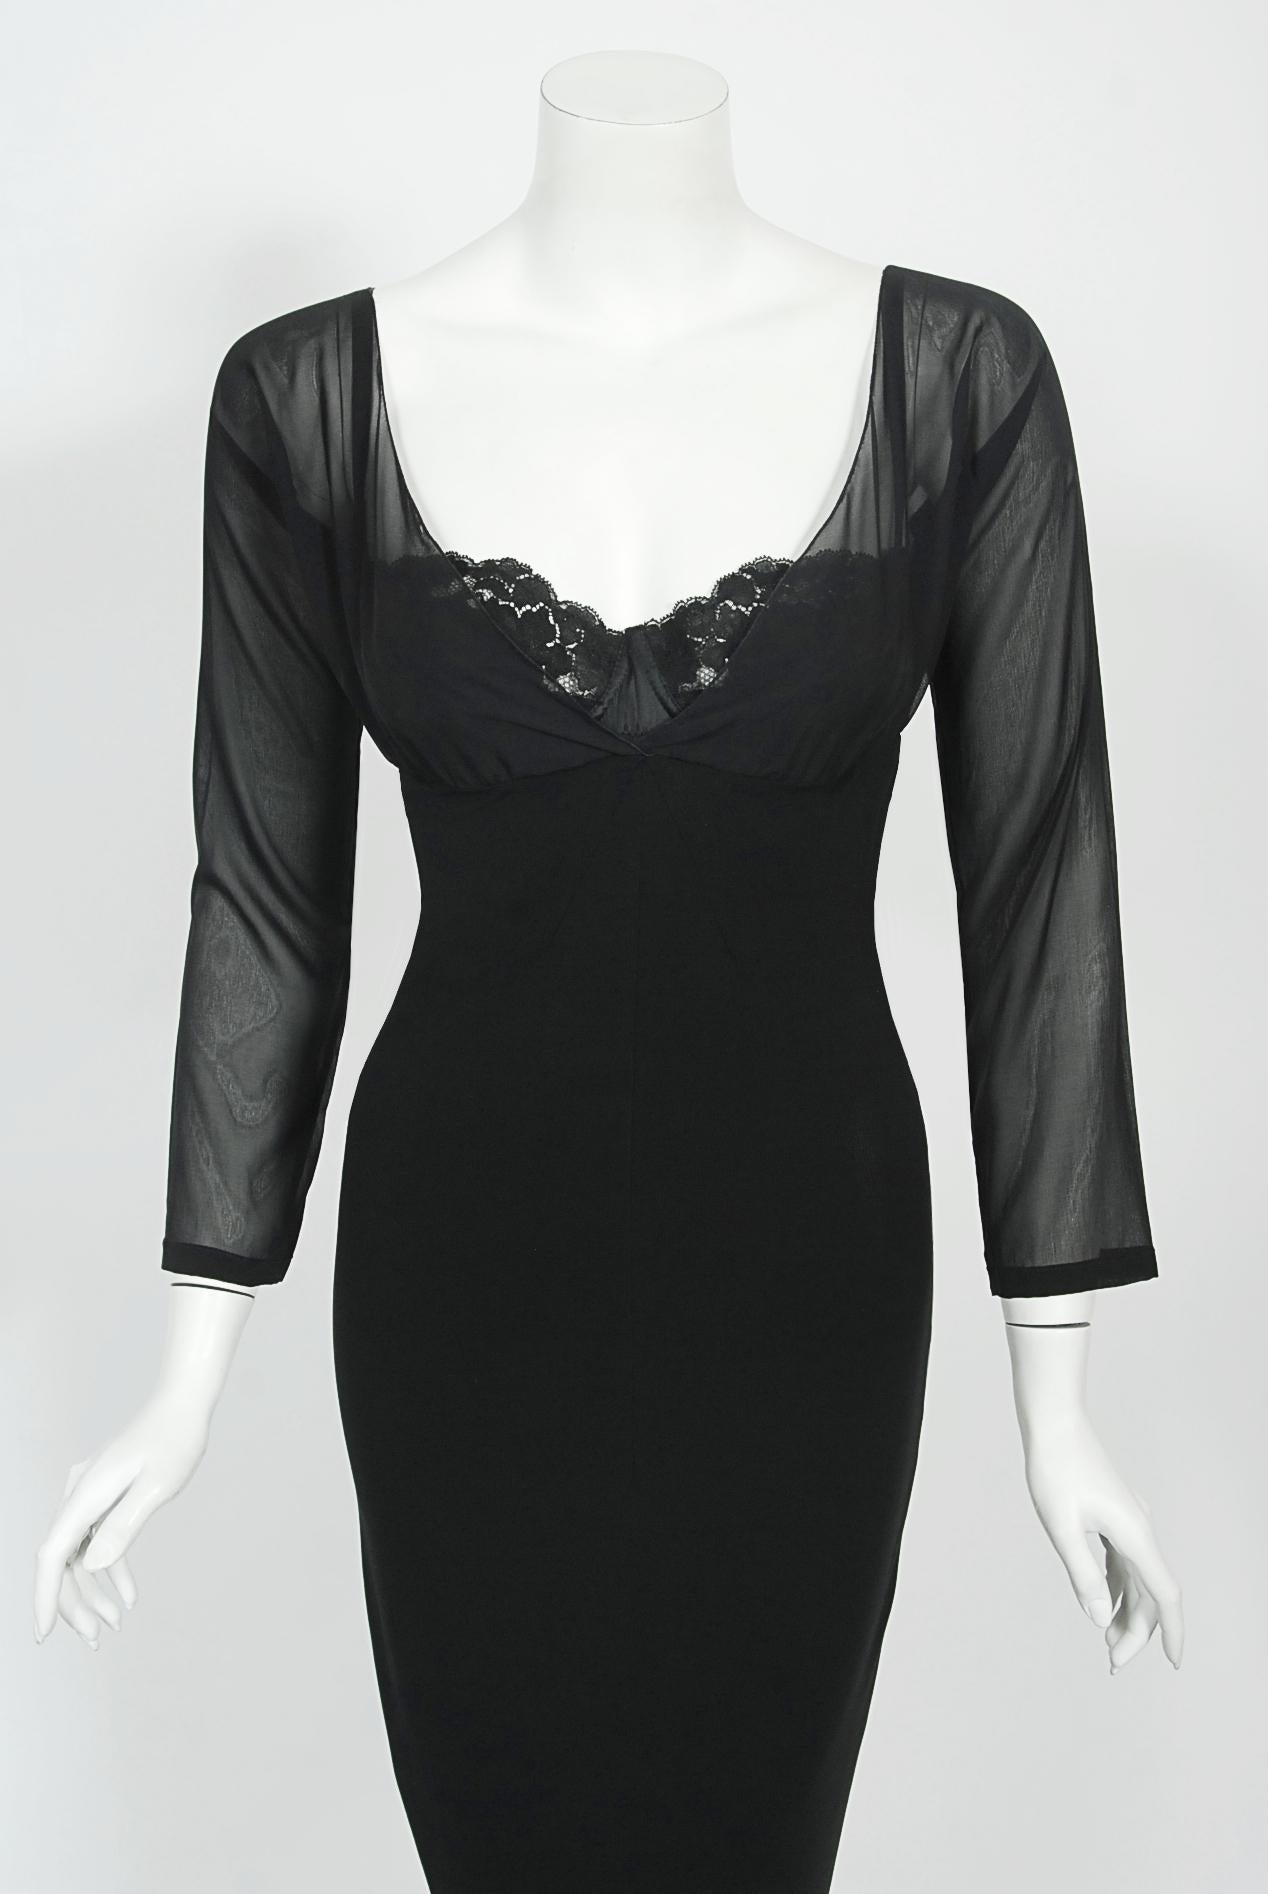 Une robe sablier ultra séduisante et totalement emblématique de Dolce & Gabbana en soie noire extensible et transparente, datant de la collection automne/hiver 2001. Comme le montre la photo, Beyoncé a porté une robe noire très similaire, avec